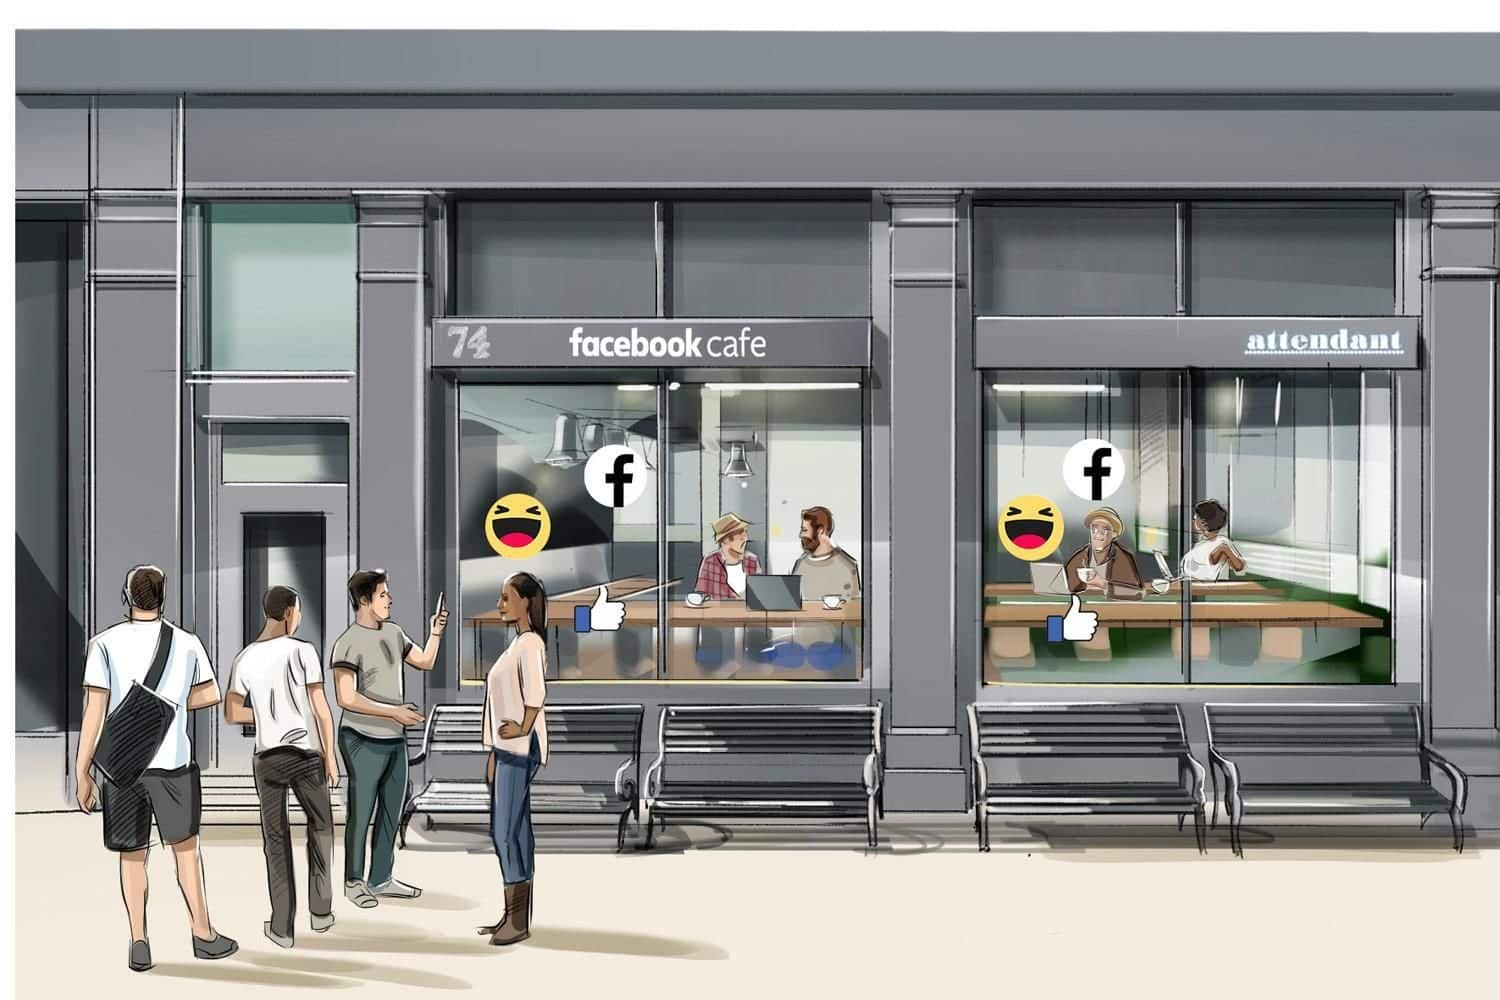 فيسبوك تفتح مقهى منبثق يشجع على فحص الخصوصية